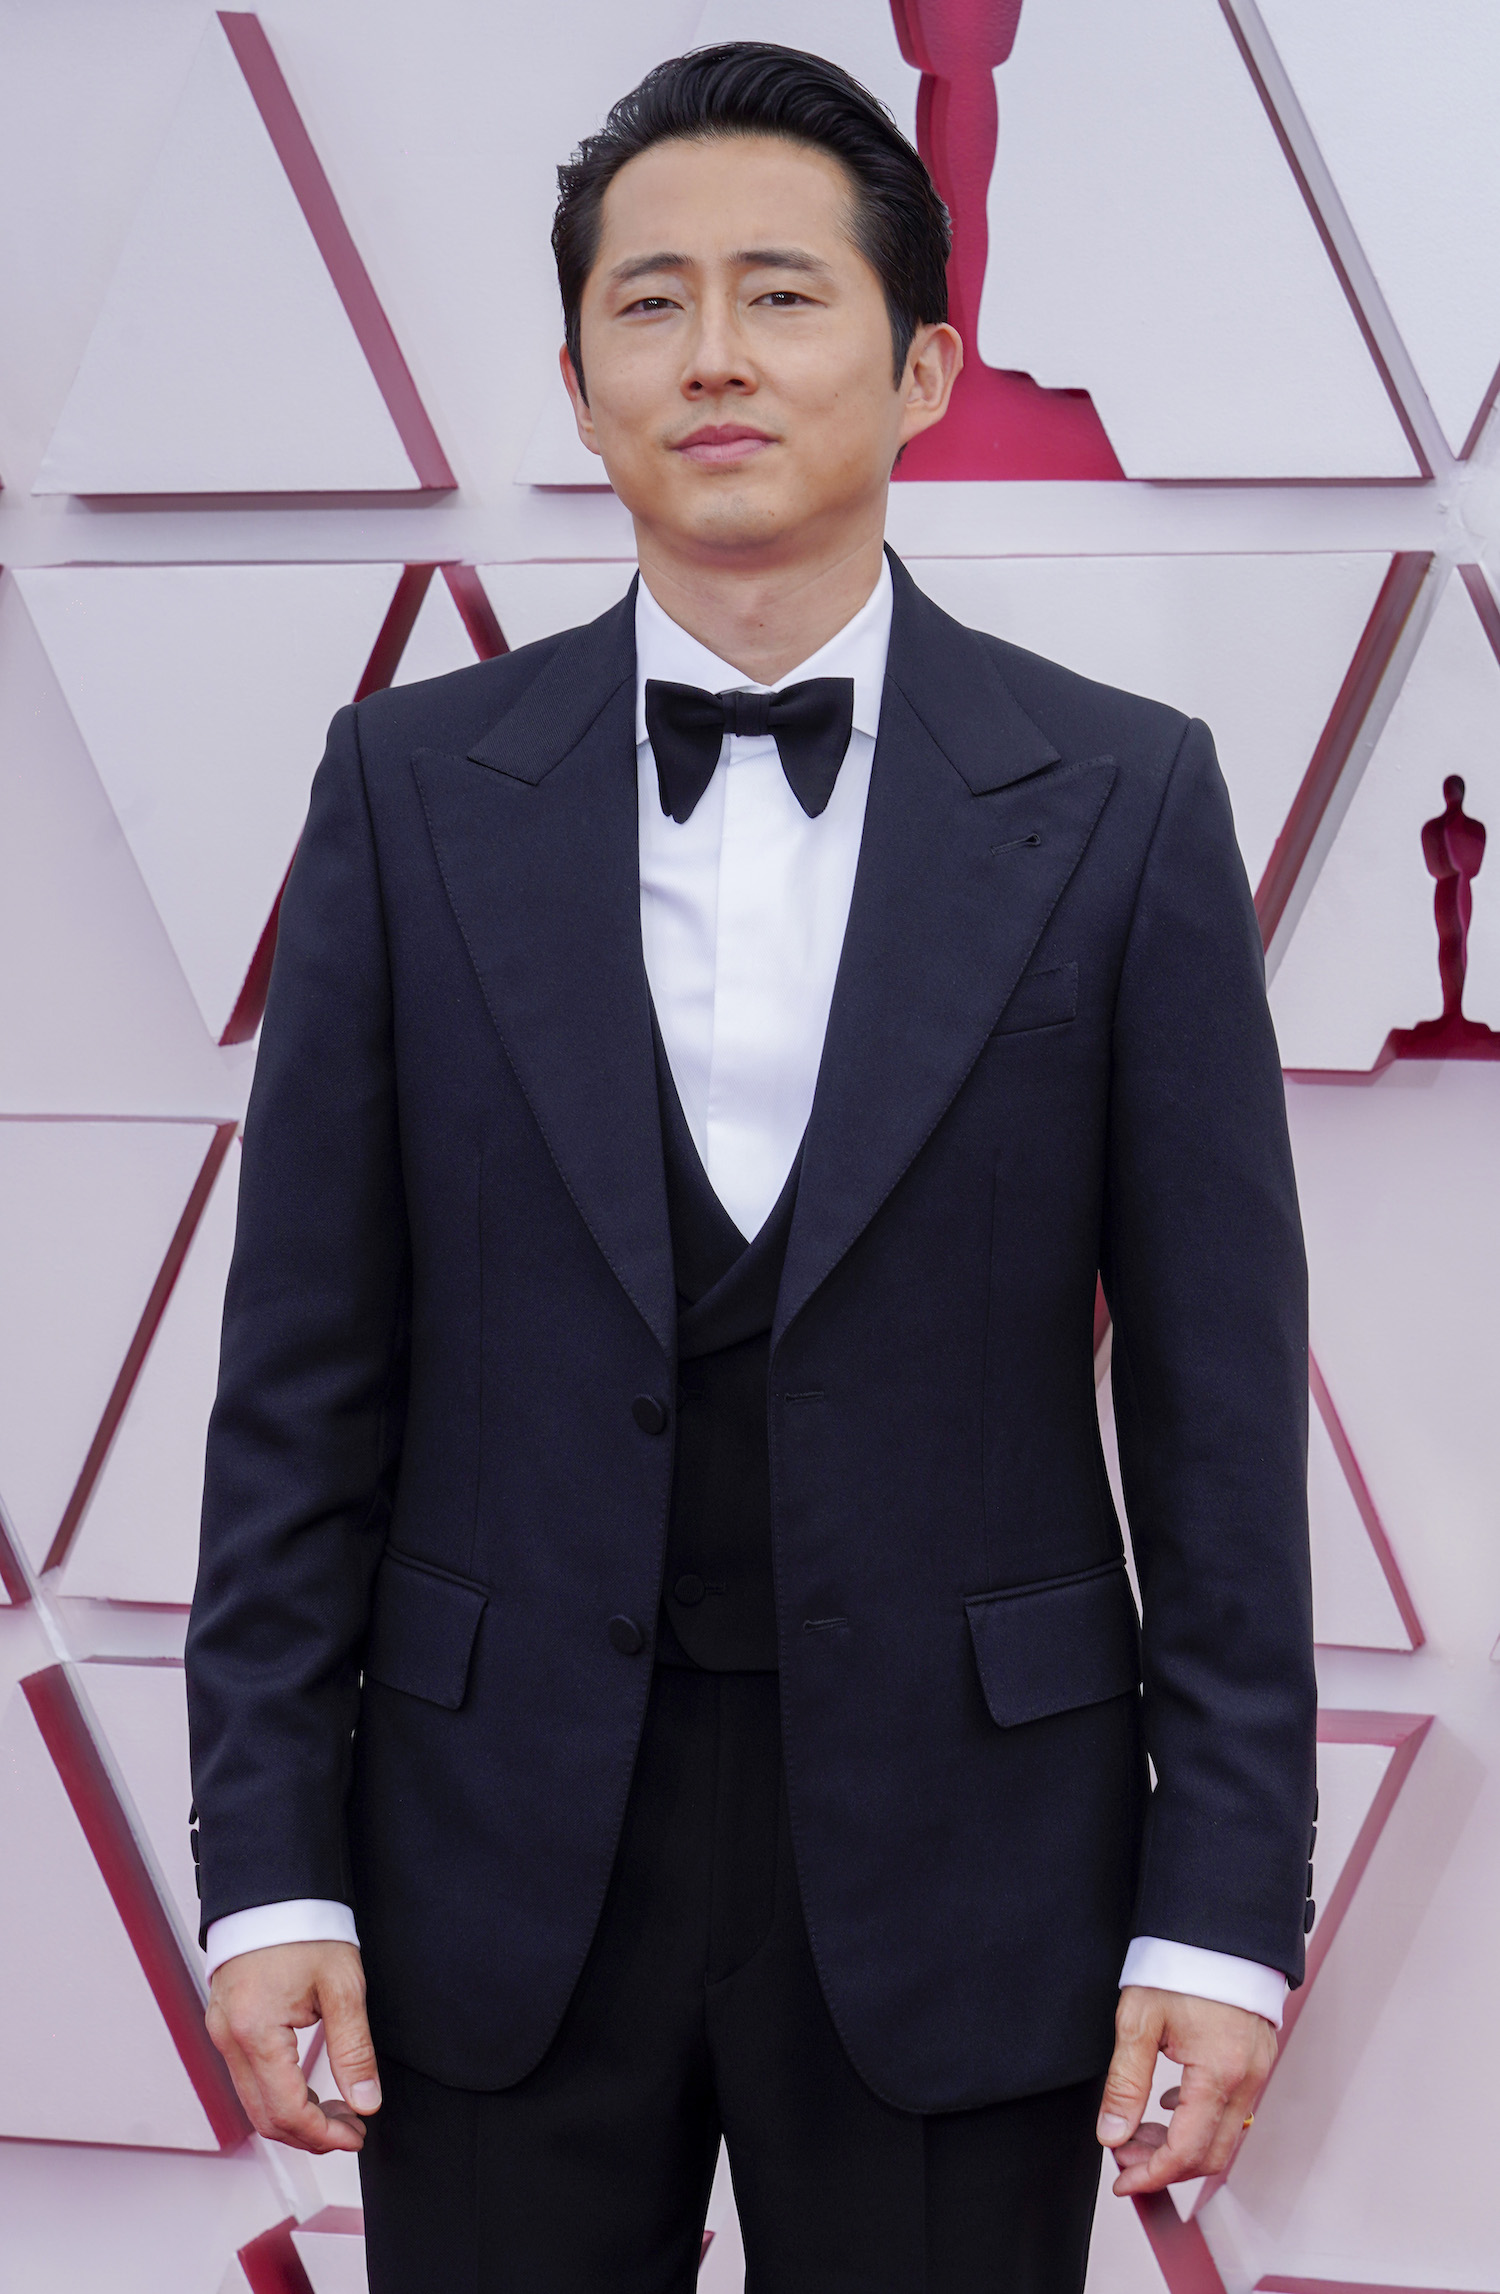 Steven Yeun at the Oscars 2021 Red Carpet